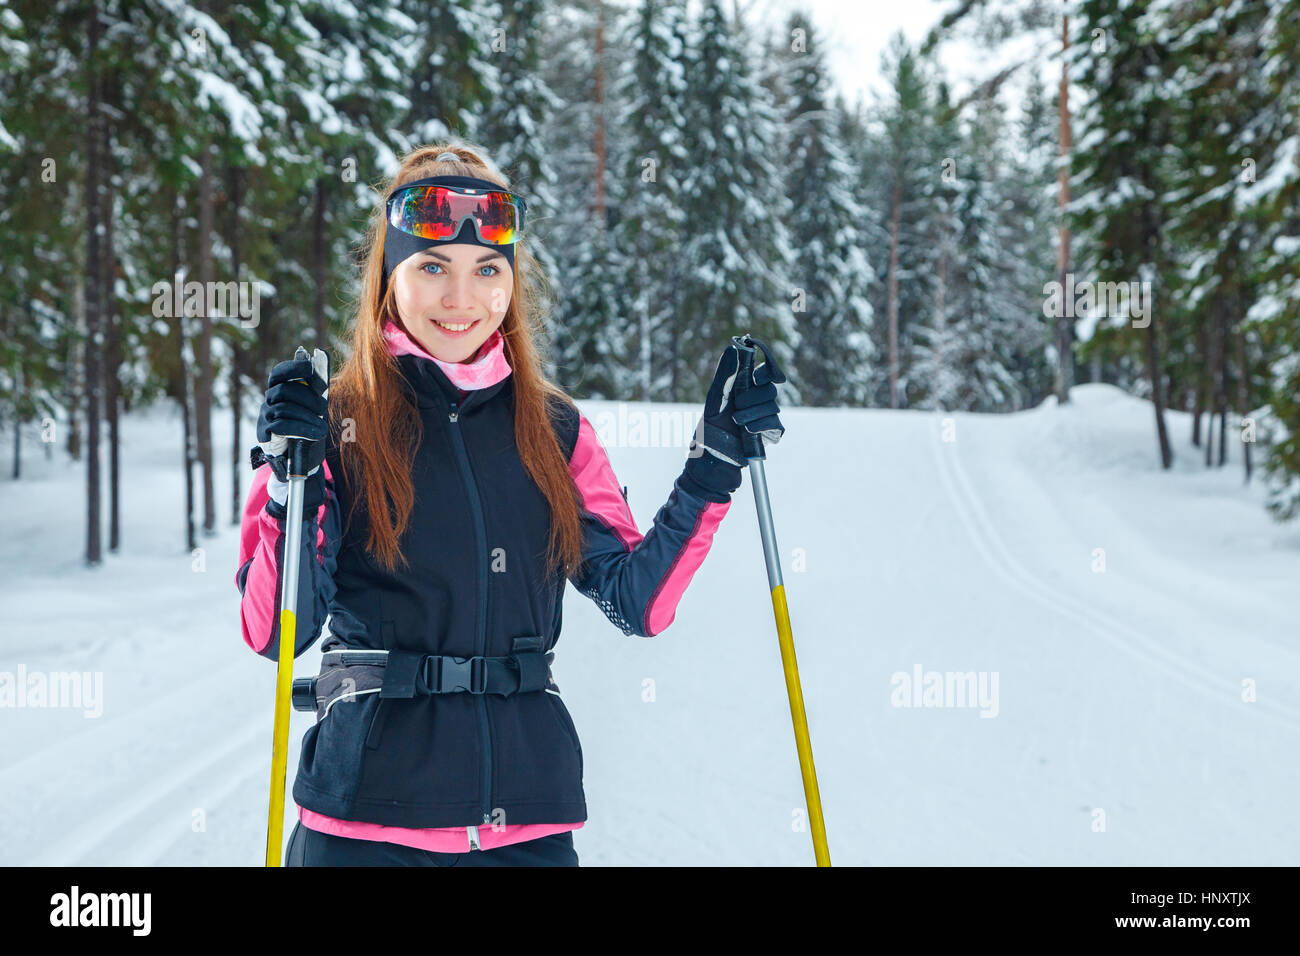 Langlaufen Frau tun klassischen nordischen Skilanglauf im Trail Spuren im tief verschneiten Wald Stockfoto